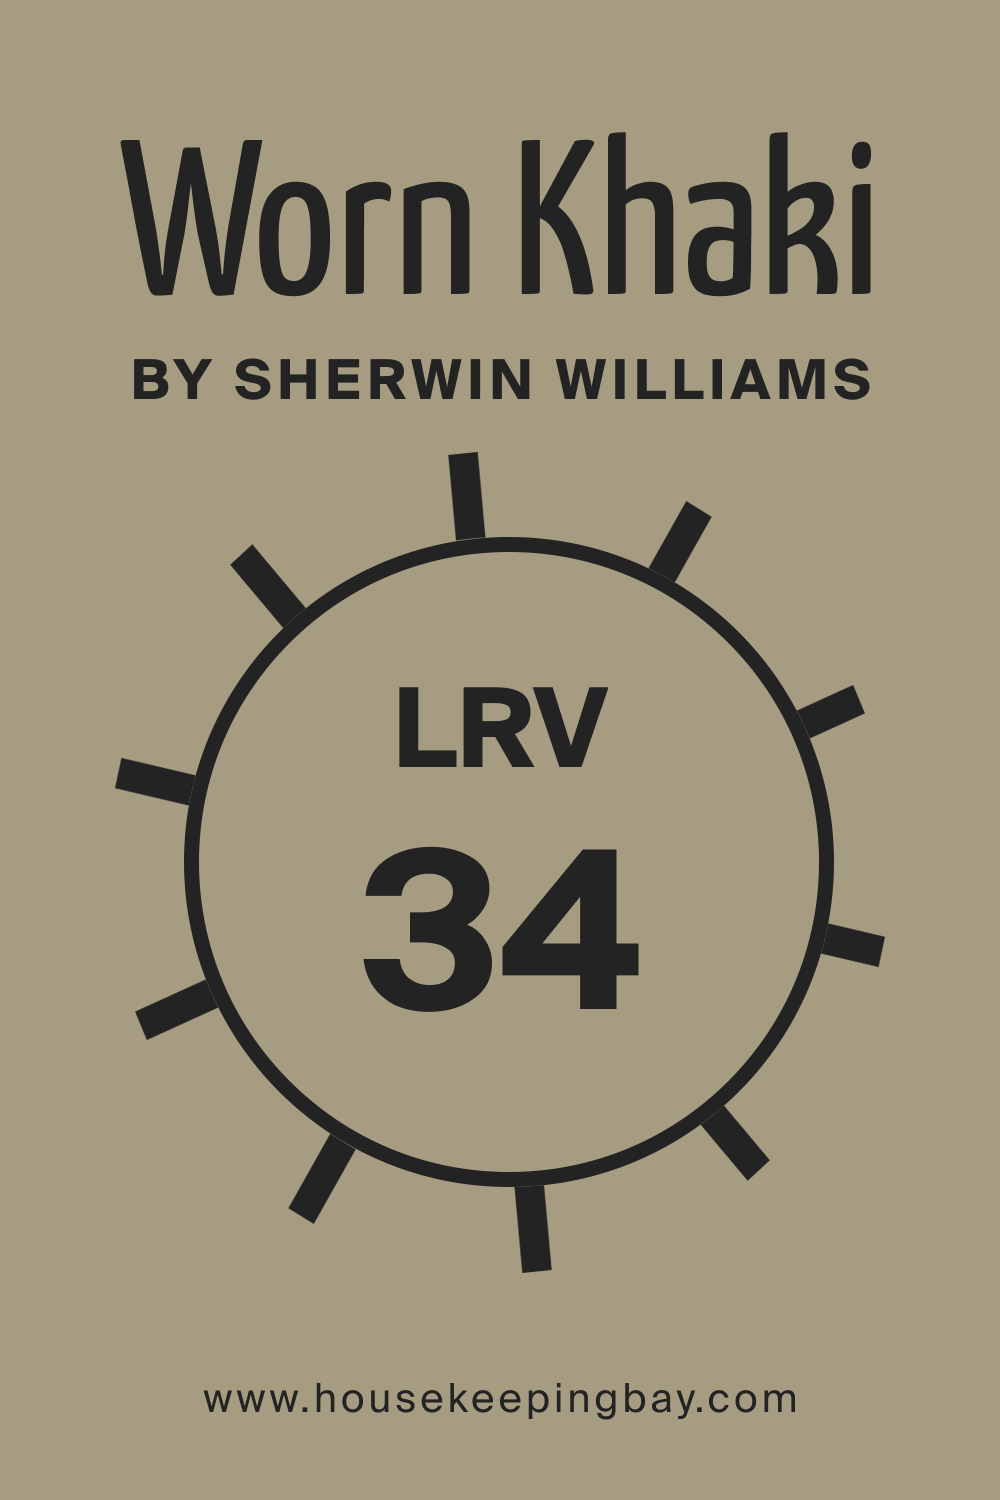 SW 9527 Worn Khaki by Sherwin Williams. LRV 34